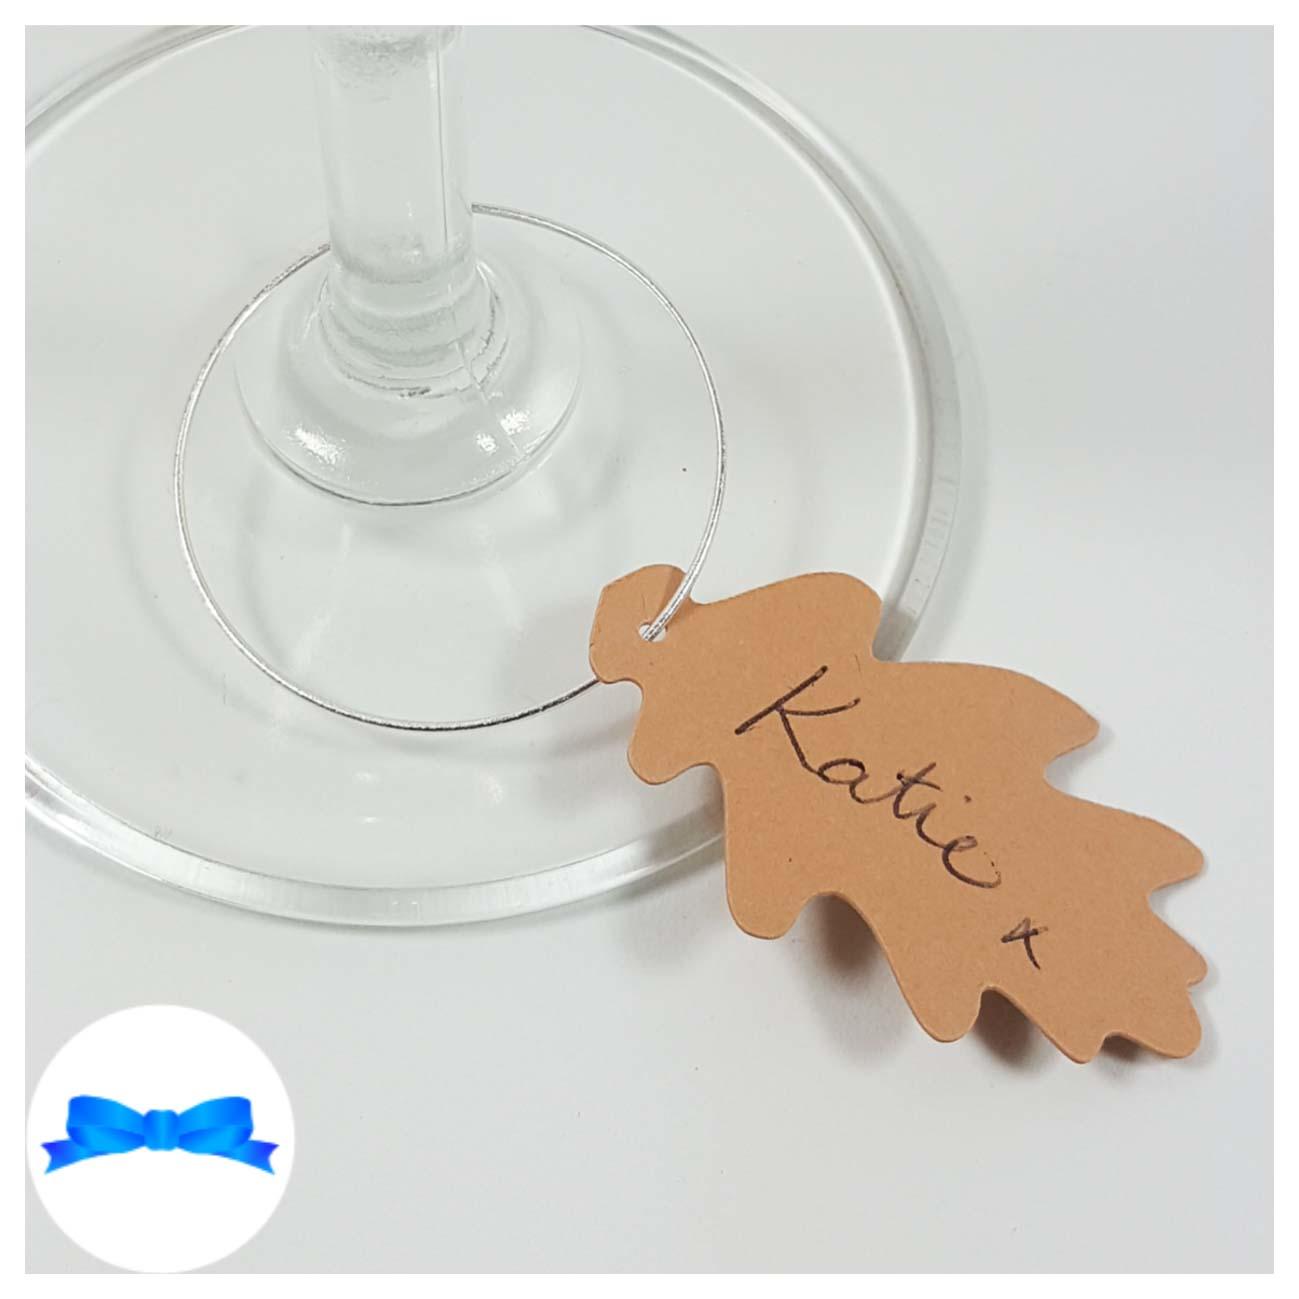 Card oak leaf wine glass charm